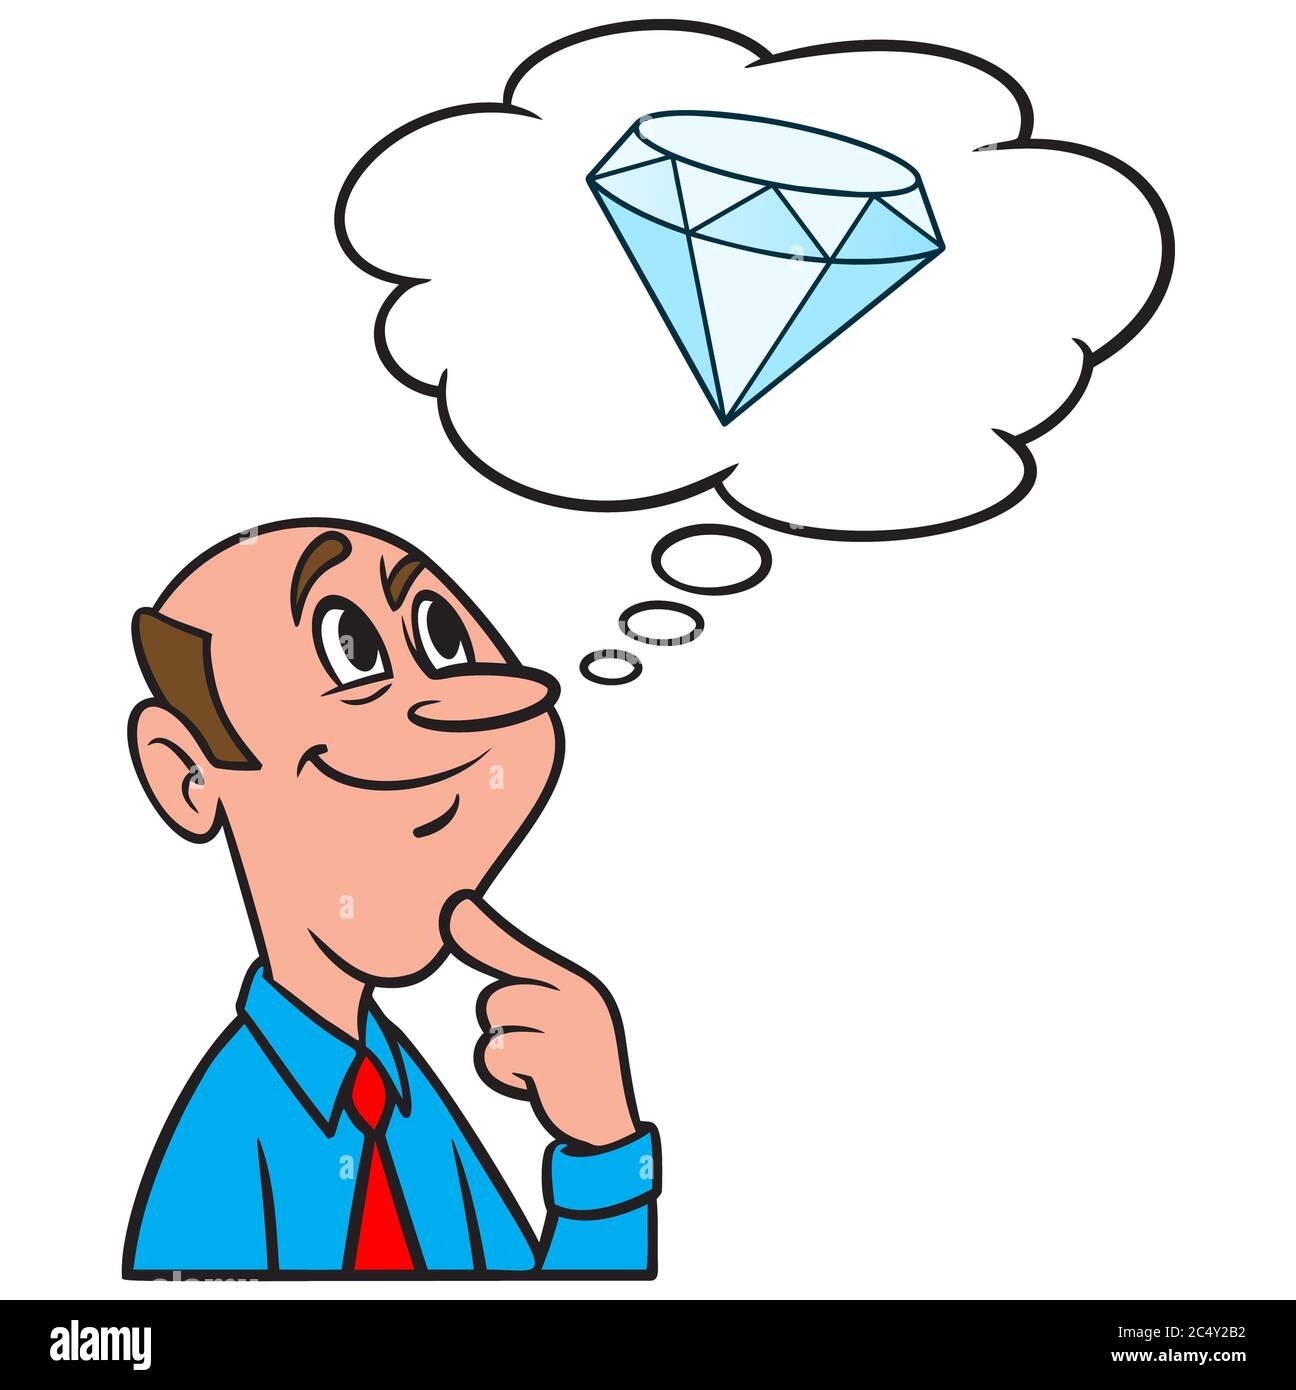 Penser à un diamant - une illustration d'une personne penser à UN diamant. Illustration de Vecteur